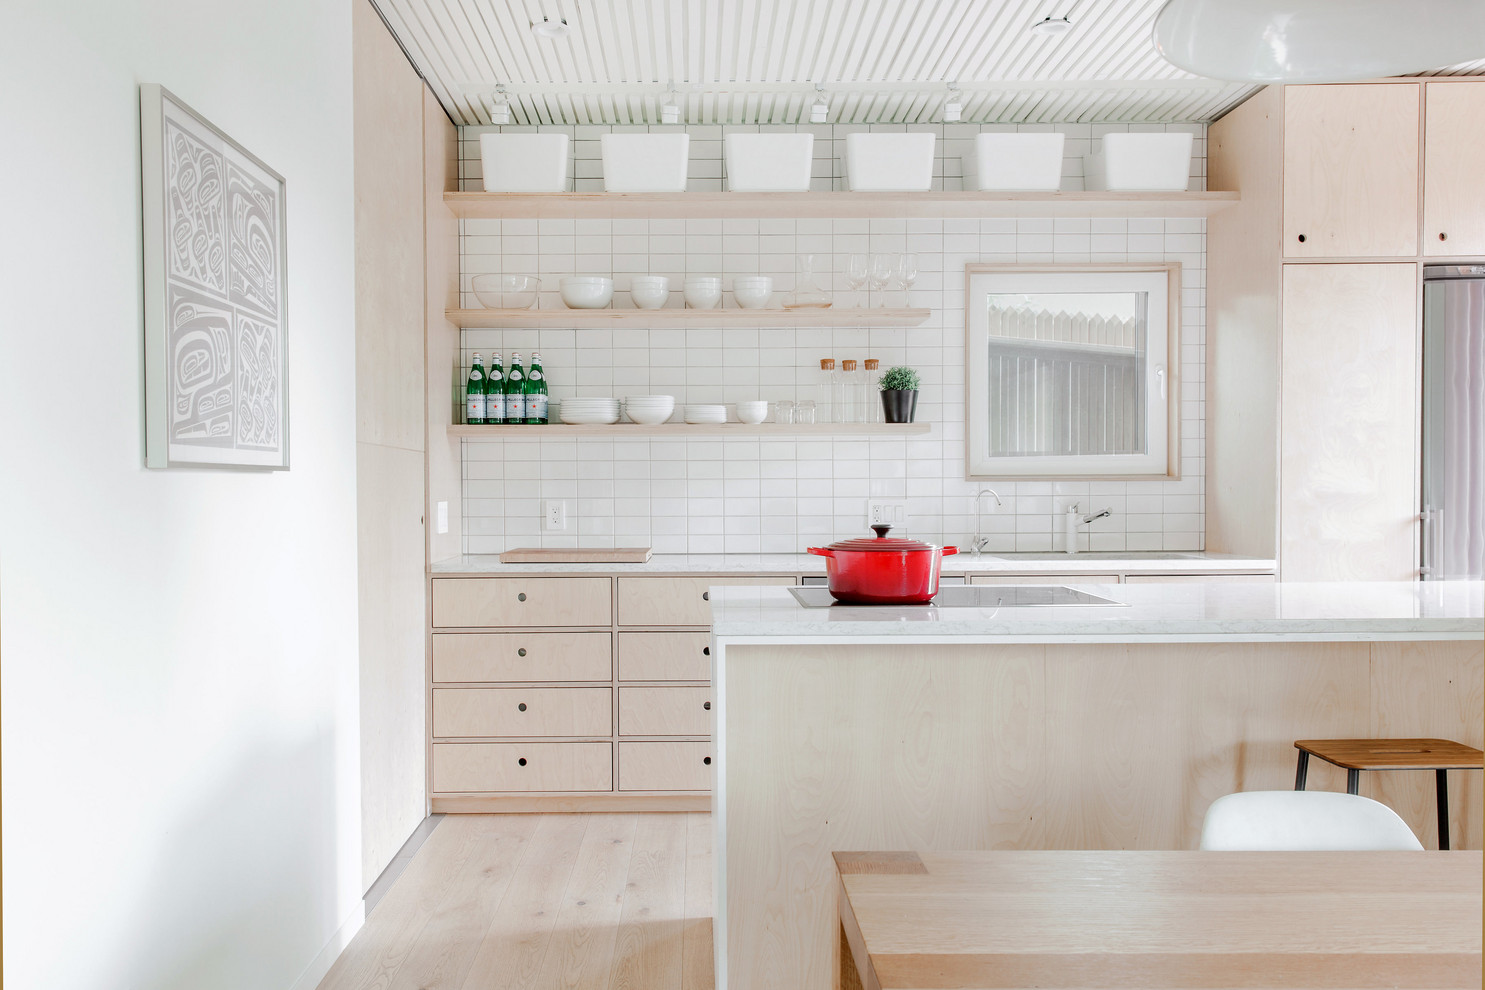 18 Minimalist Scandinavian Kitchen Designs That Will Brighten Your Day